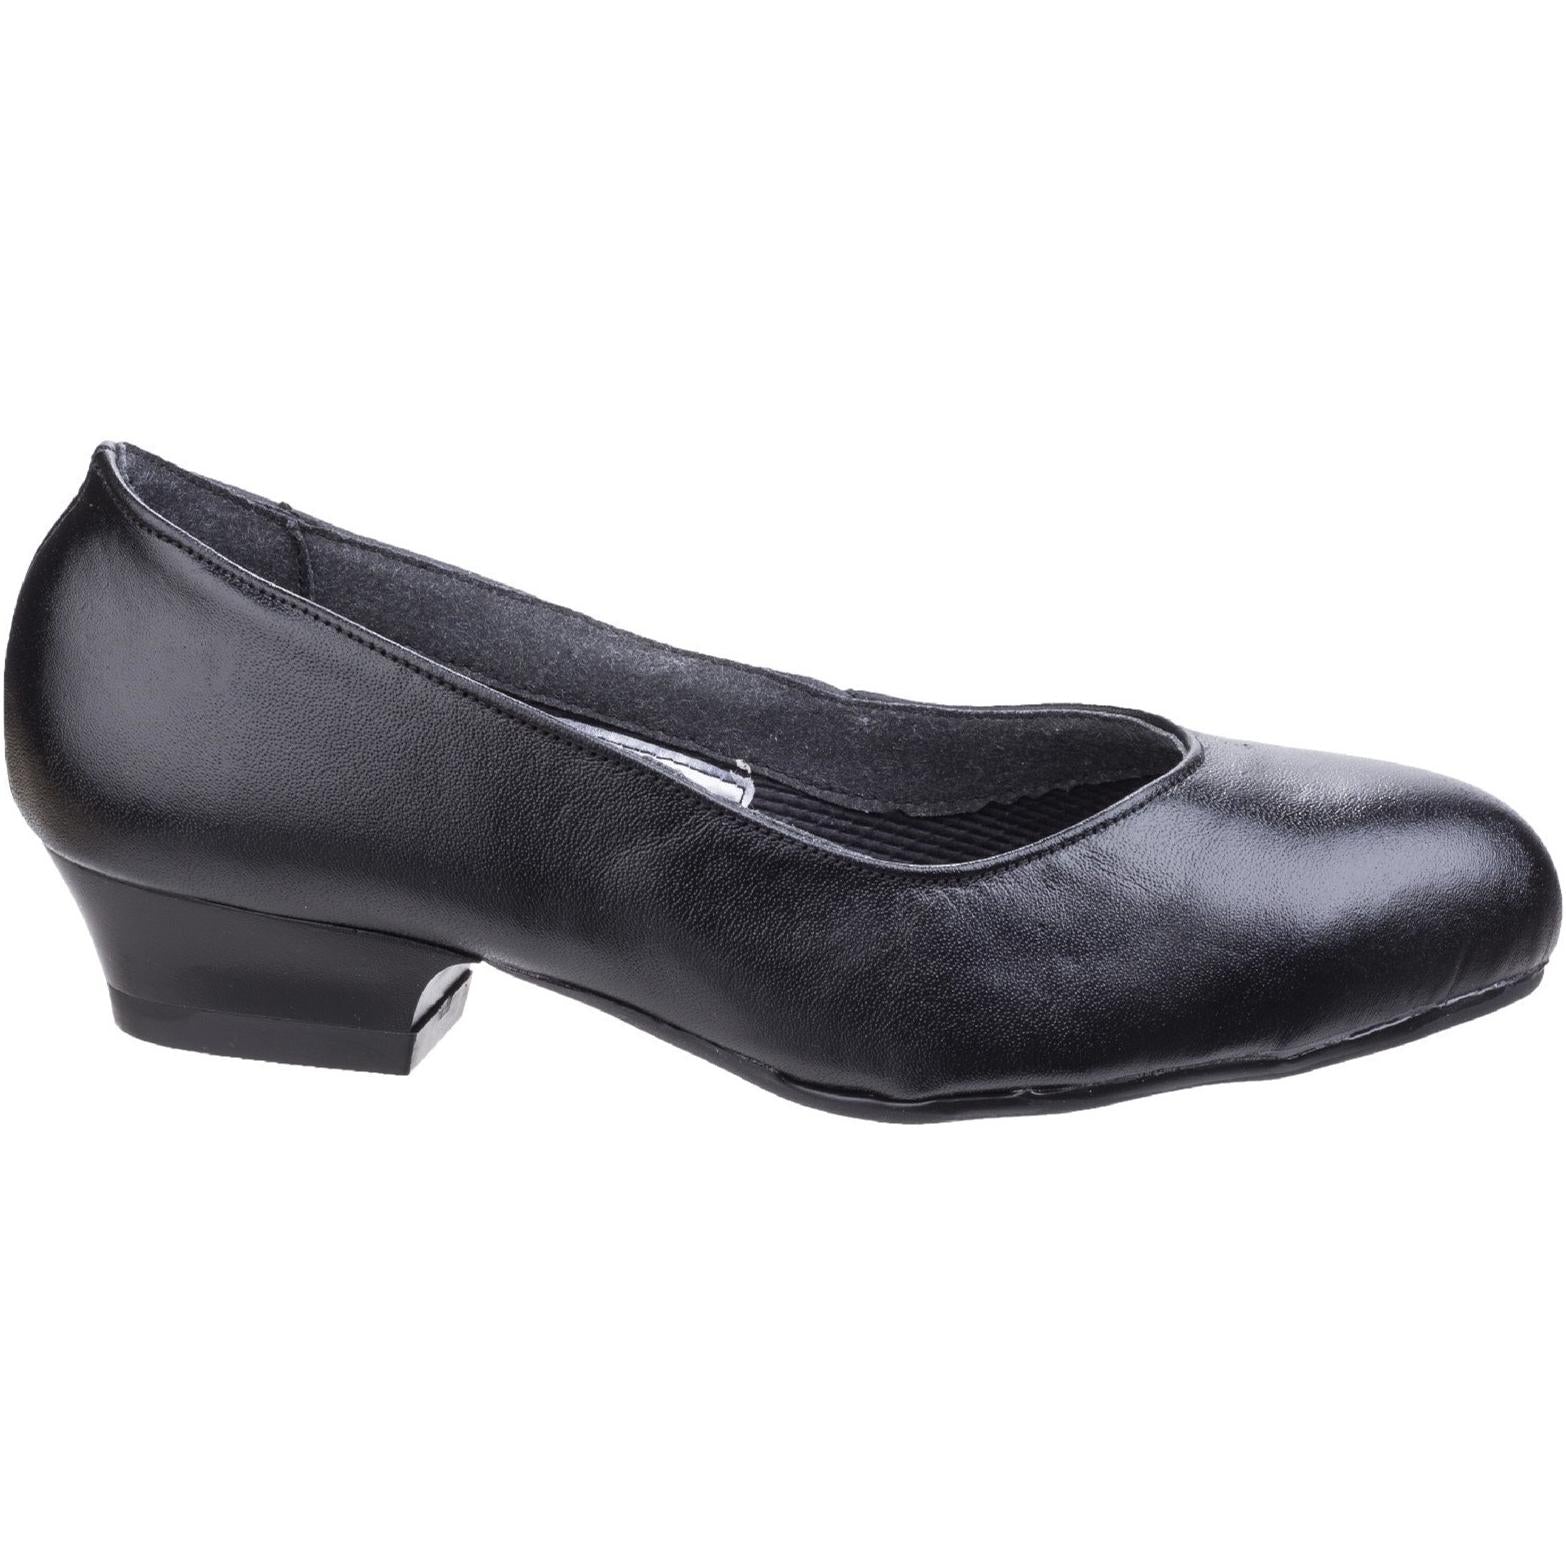 Amblers Steel FS96 Women’s Safety Court Shoe